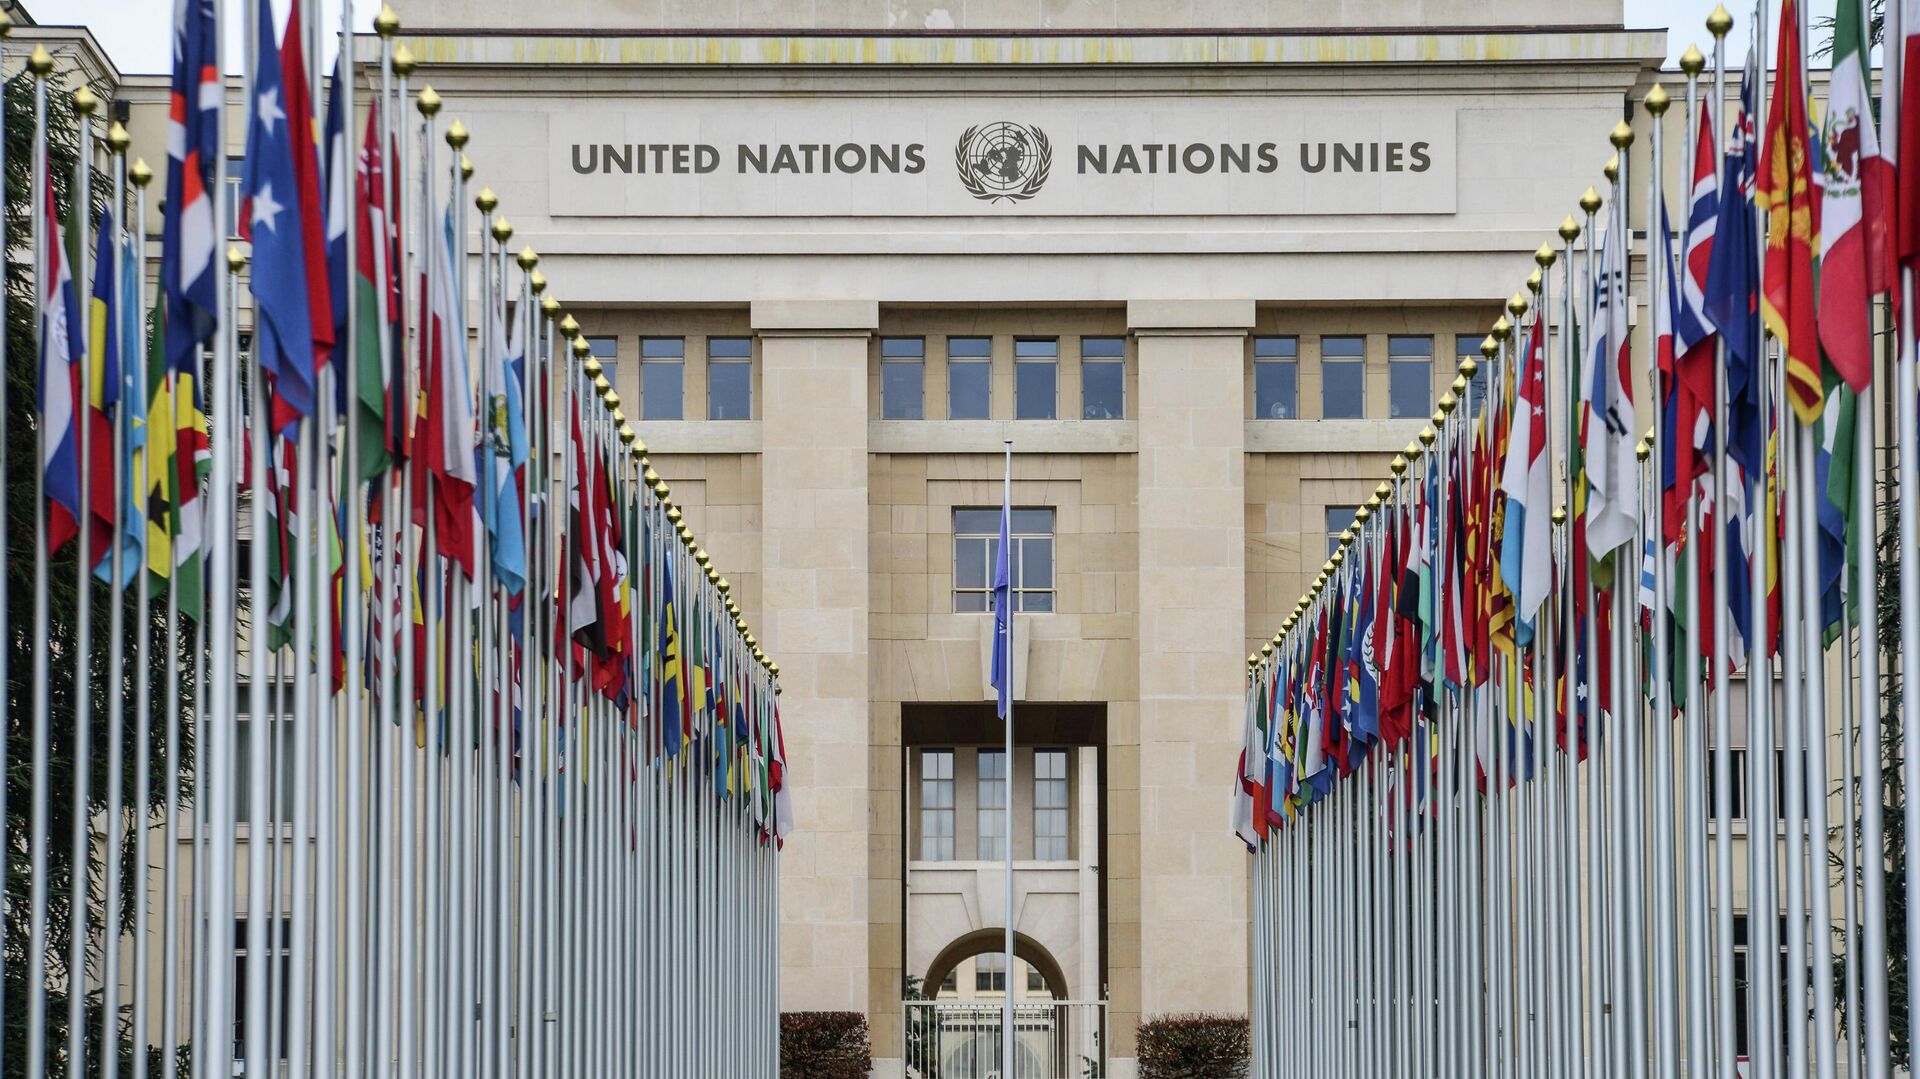 Аллея флагов возле здания Организации Объединённых Наций (ООН) в Женеве. - Sputnik Грузия, 1920, 27.02.2023